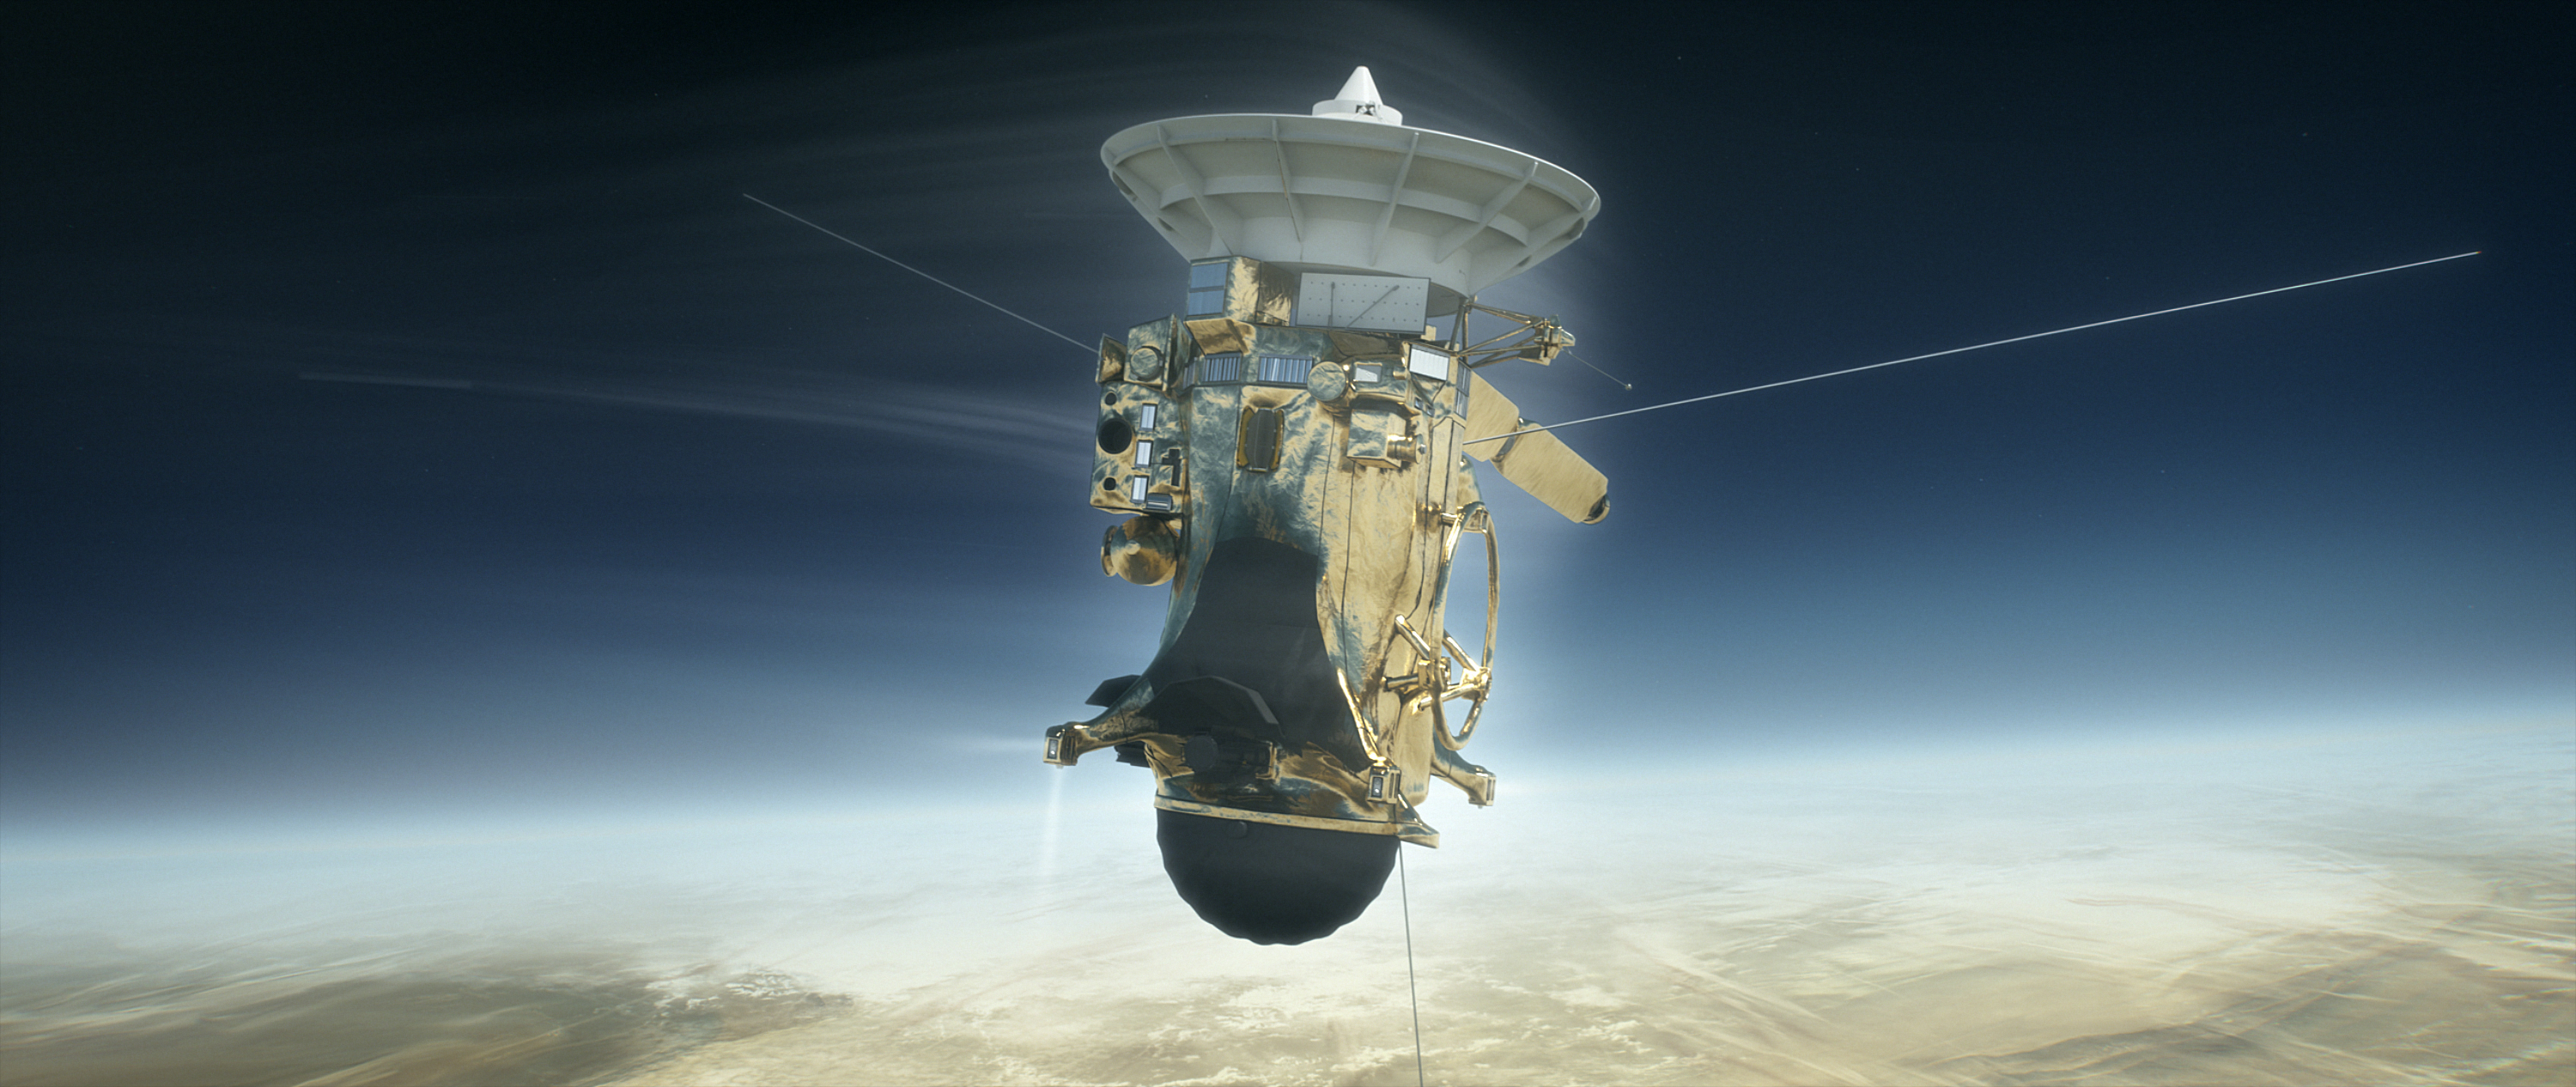 Sonda Cassini - Huygens entrando en la atmósfera